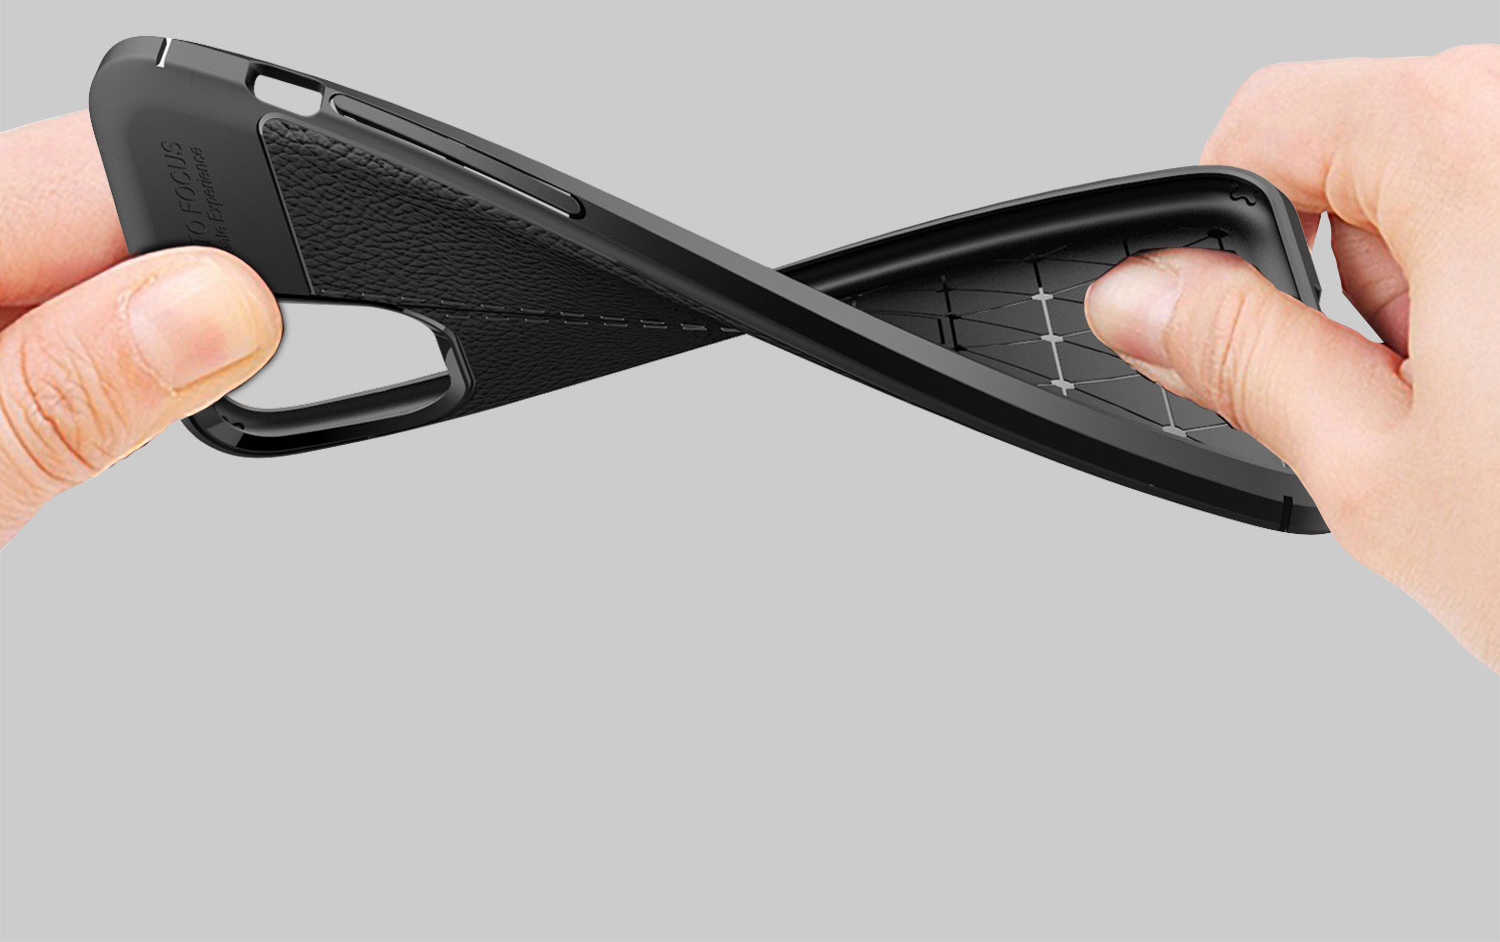 Ốp lưng Auto Focus silicon giả da, chống sốc cho iPhone 11 Pro/11 Pro Max - Hàng chính hãng